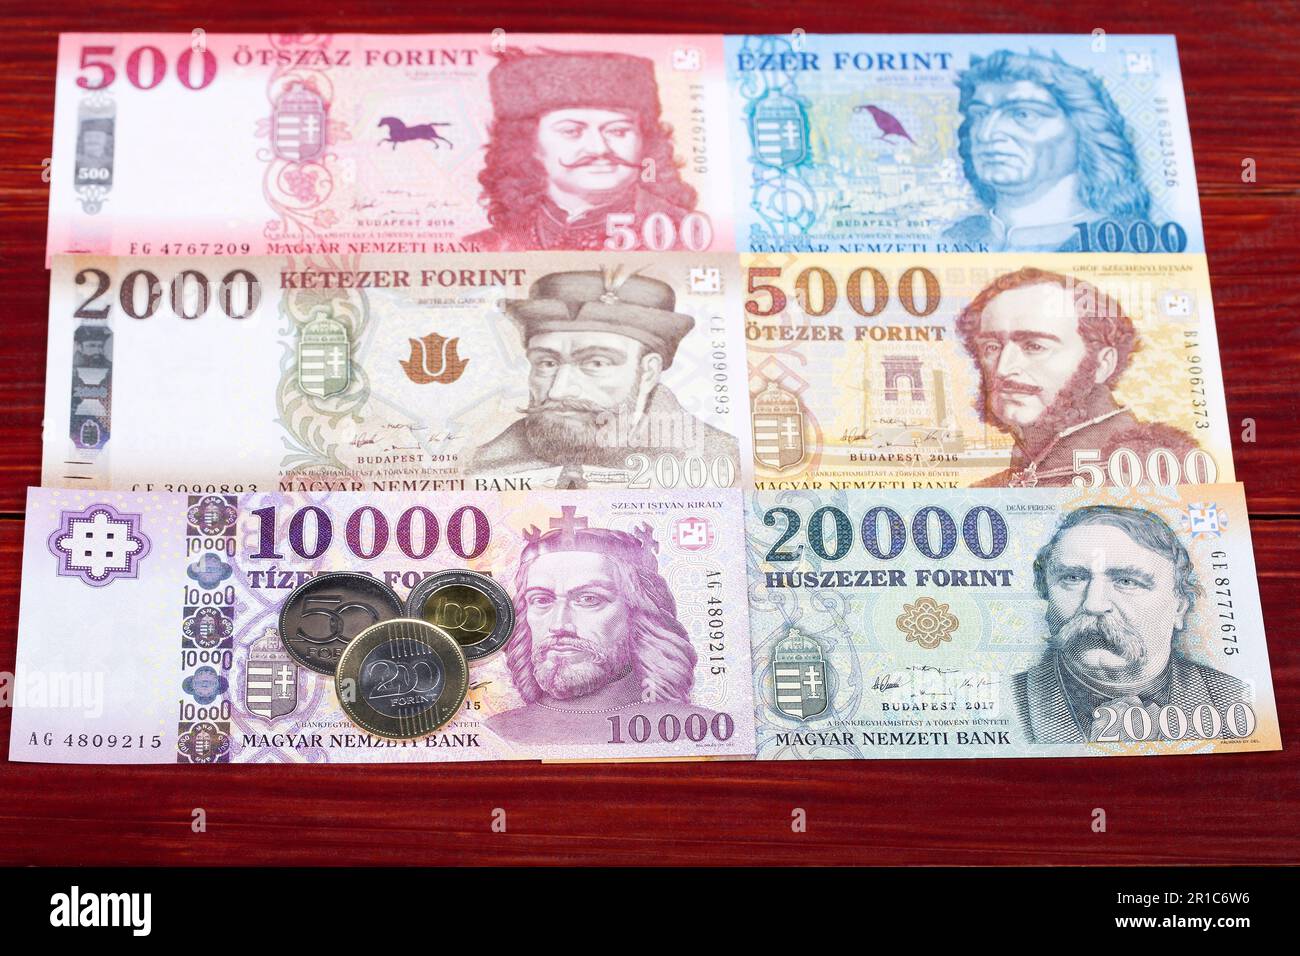 Ungarisches Geld - Forint - Münzen und Banknoten Stockfoto